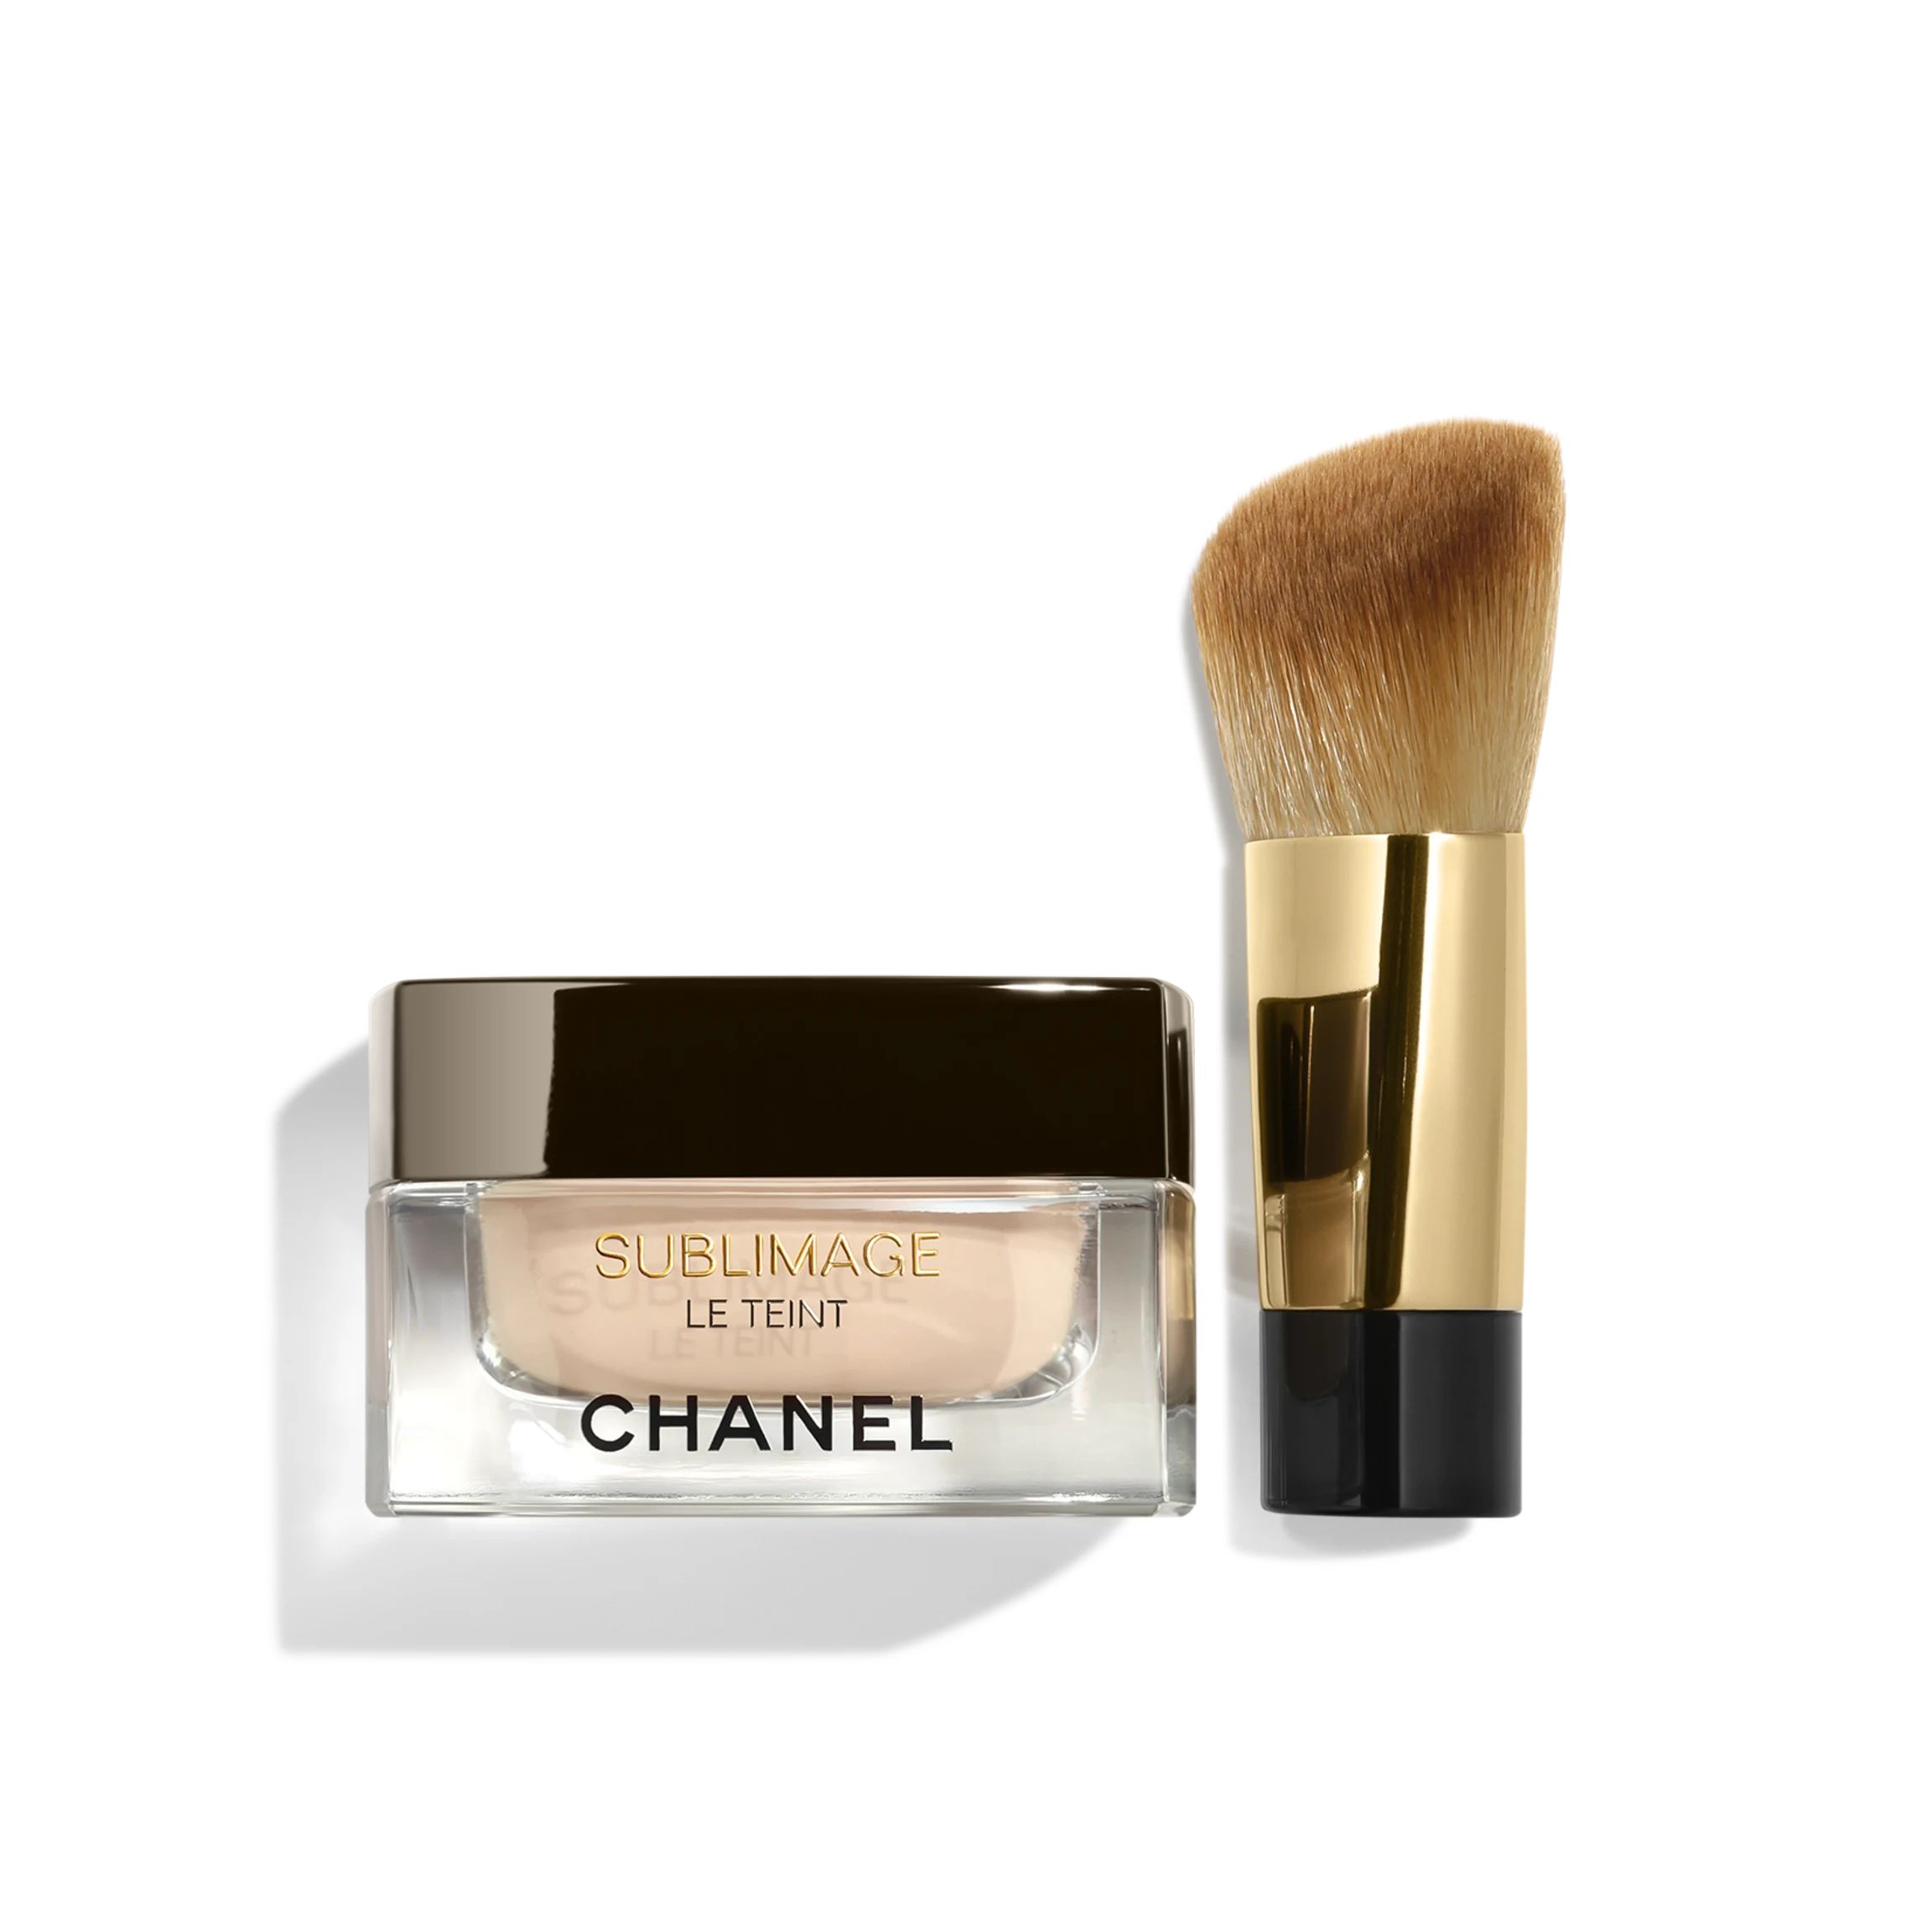 SUBLIMAGE LE TEINT | Chanel, Inc. (US)